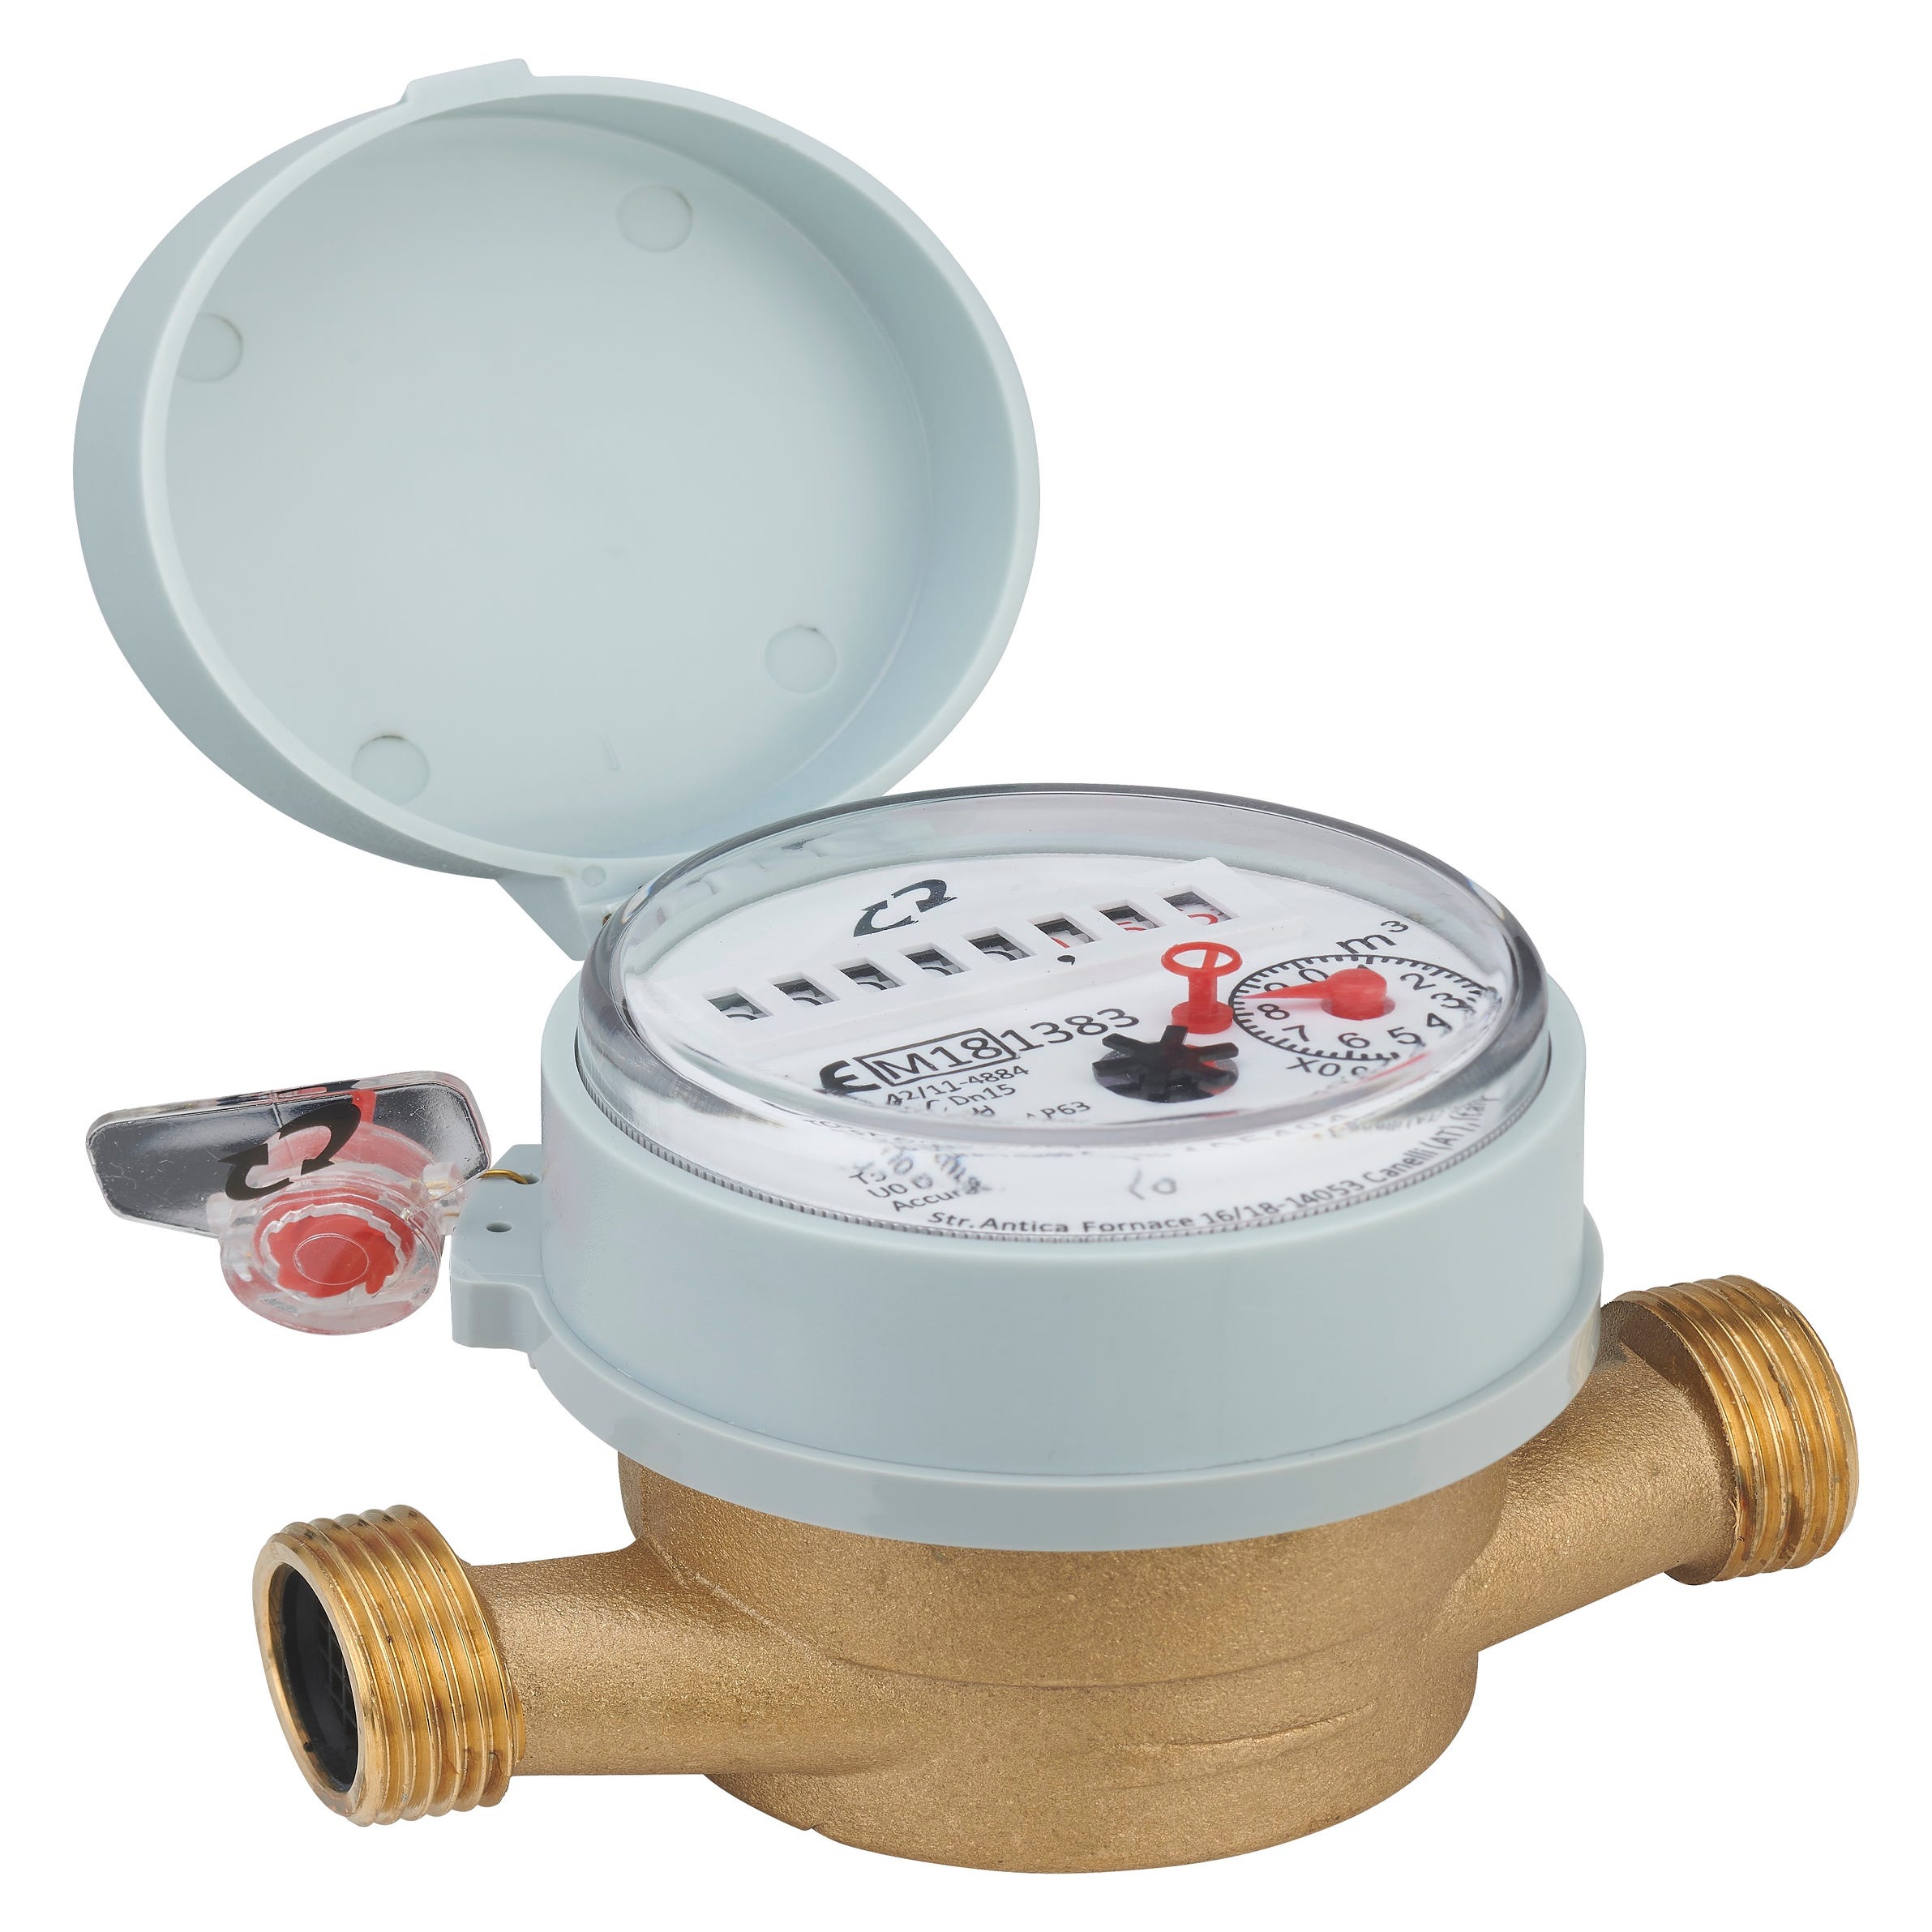 H2O-1-A Armario para contador de agua